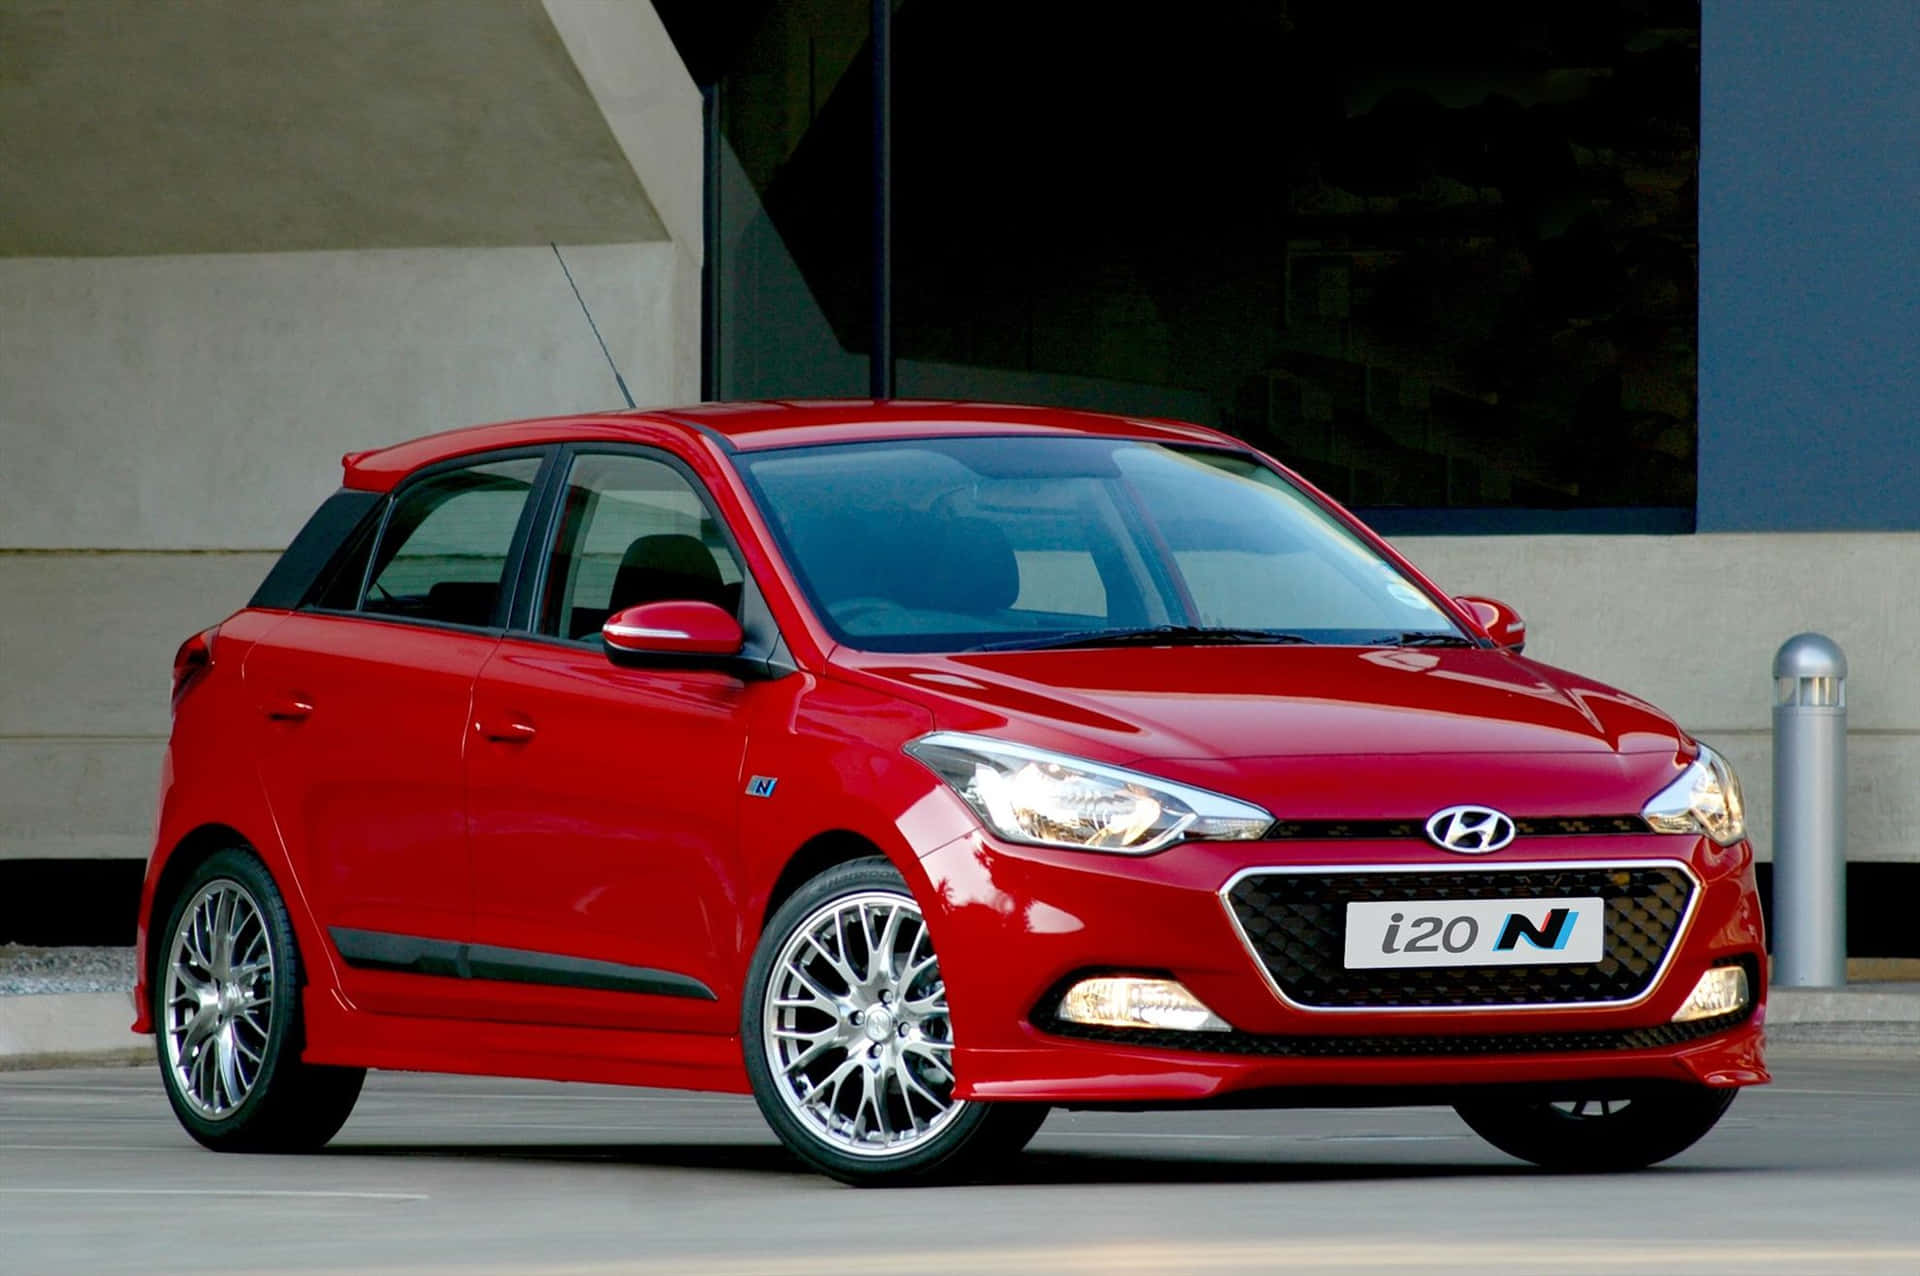 Hyundailevererar En Fantastisk Kombination Av Stil Och Prestanda.